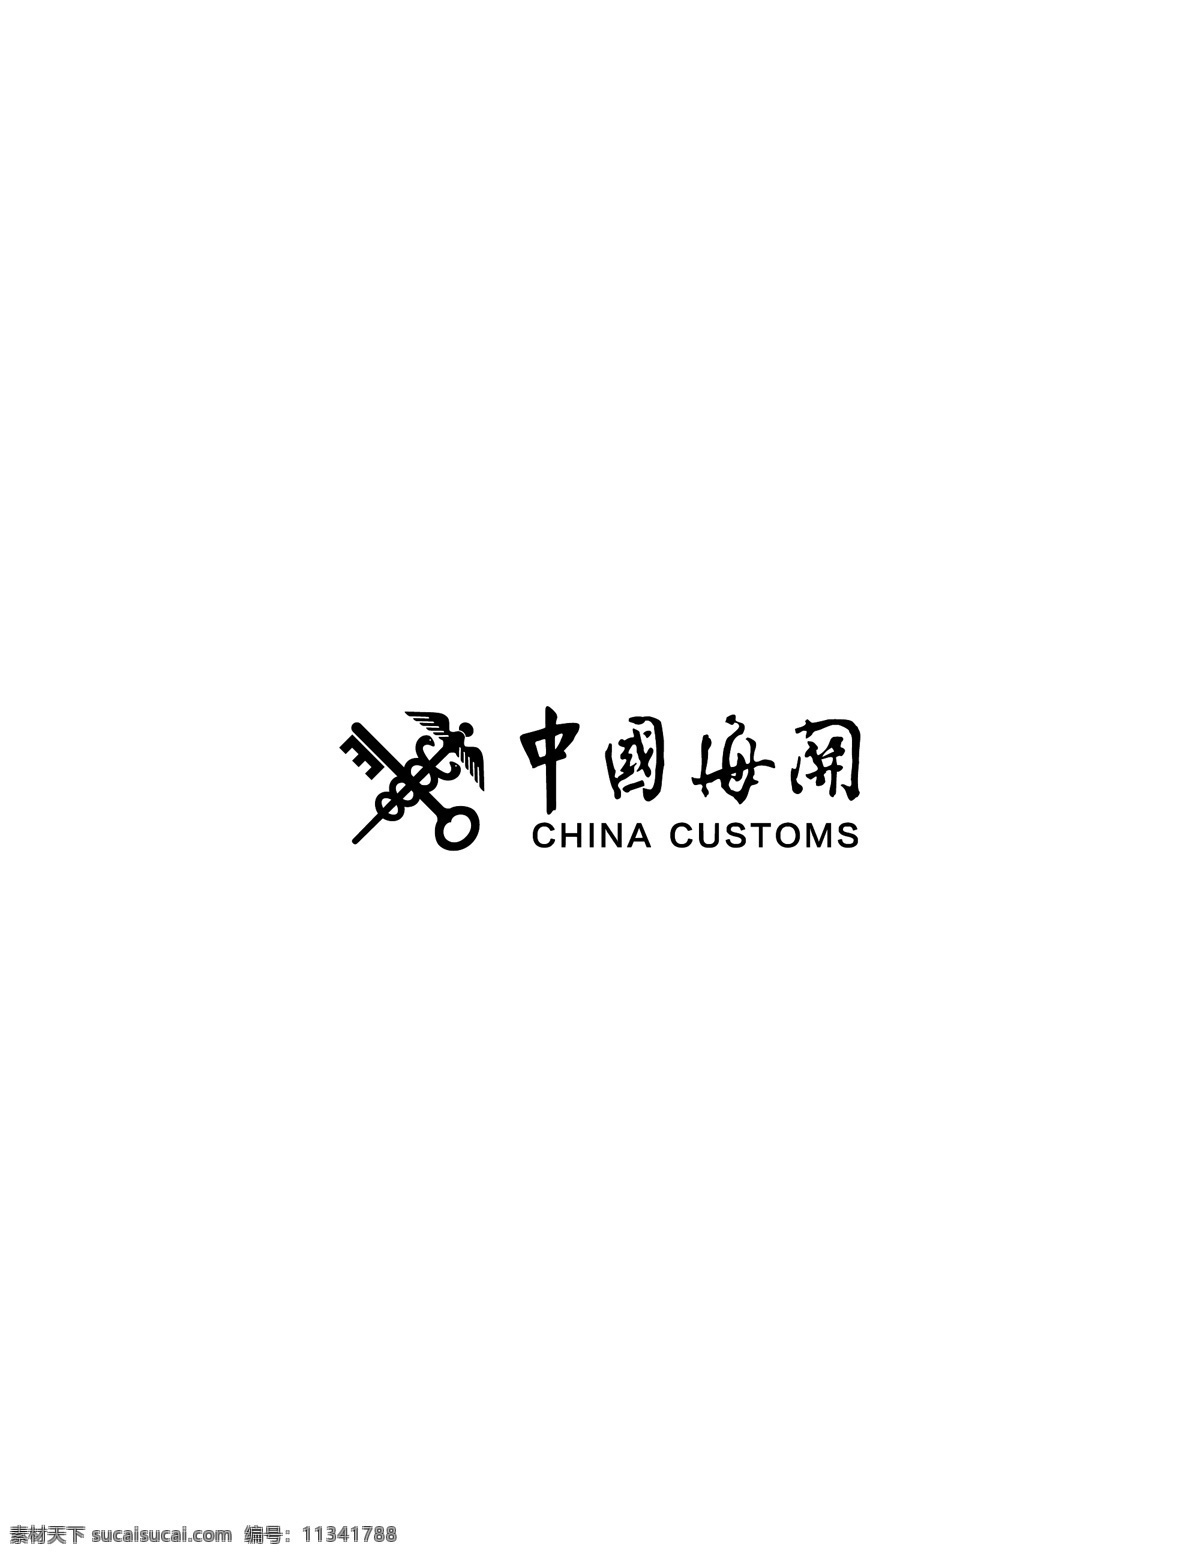 中国海关 logo 标志矢量图 ai格式 海关 矢量logo logo设计 创意设计 设计素材 标识 企业标识 图标 标志矢量 标志图标 其他图标